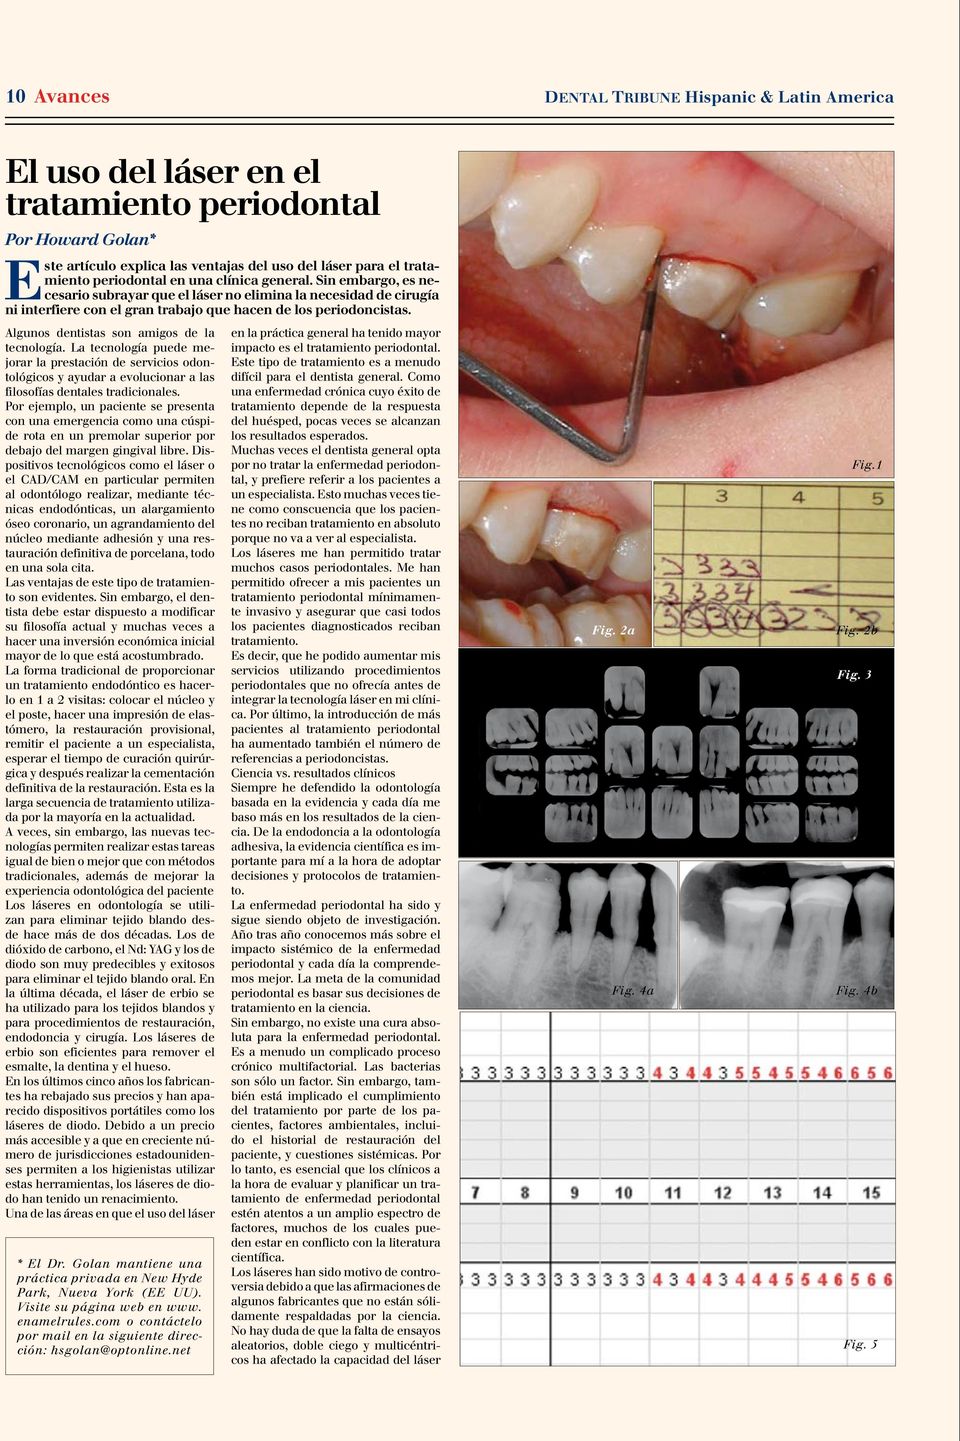 La tecnología puede mejorar la prestación de servicios odontológicos y ayudar a evolucionar a las filosofías dentales tradicionales.